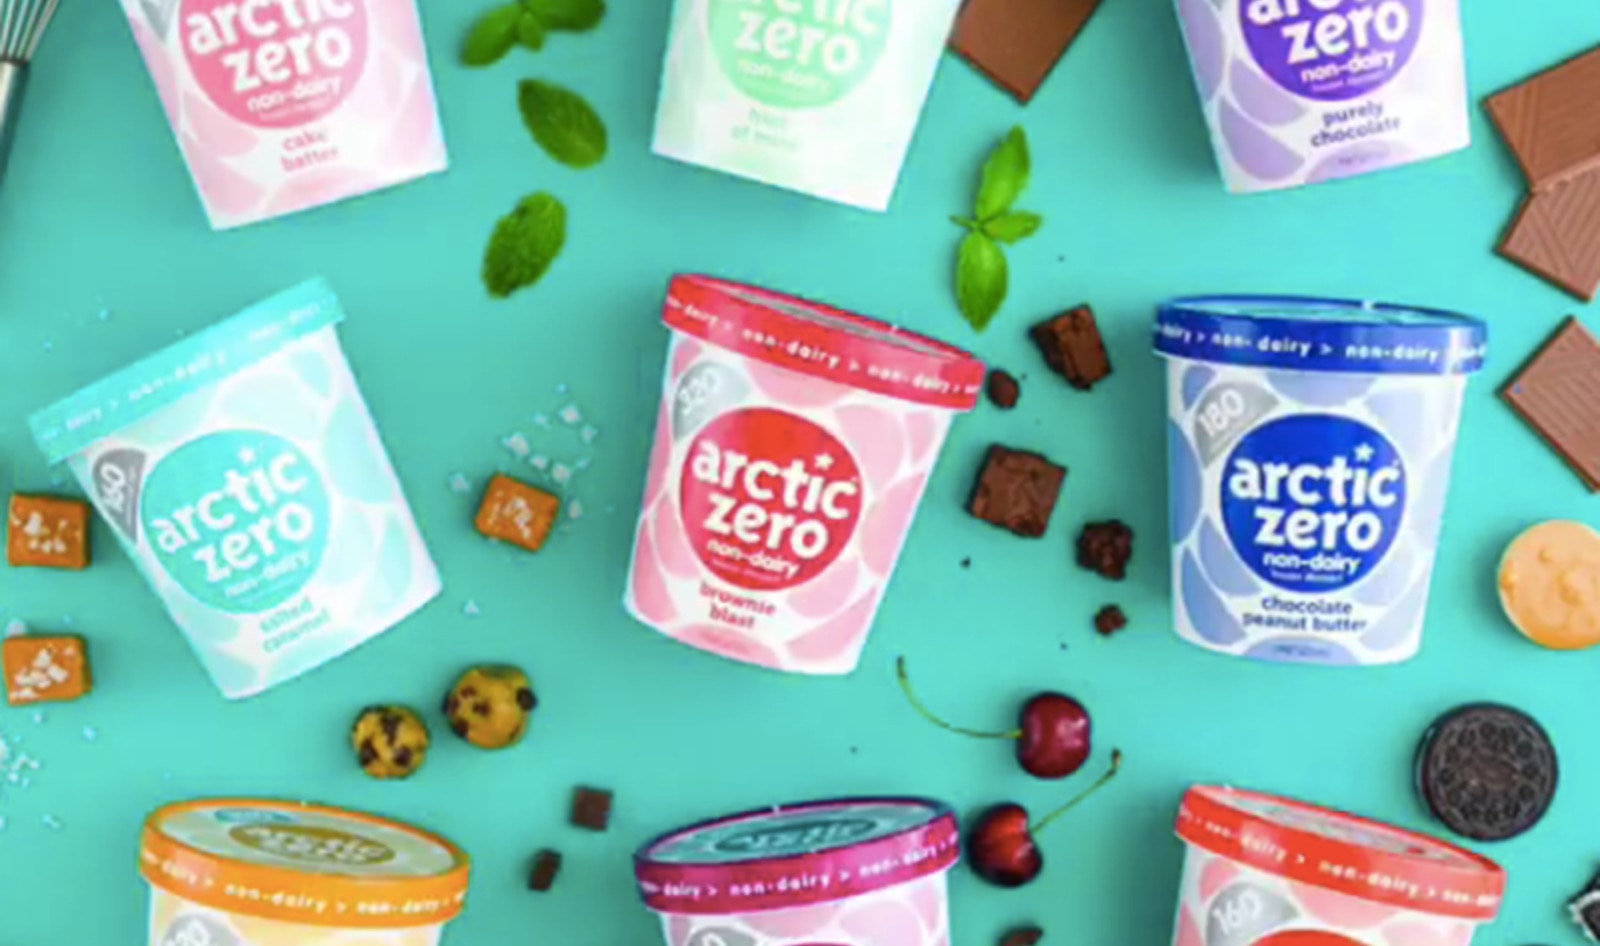 Arctic Zero Launches Fava Bean-Based Vegan Ice Cream Line